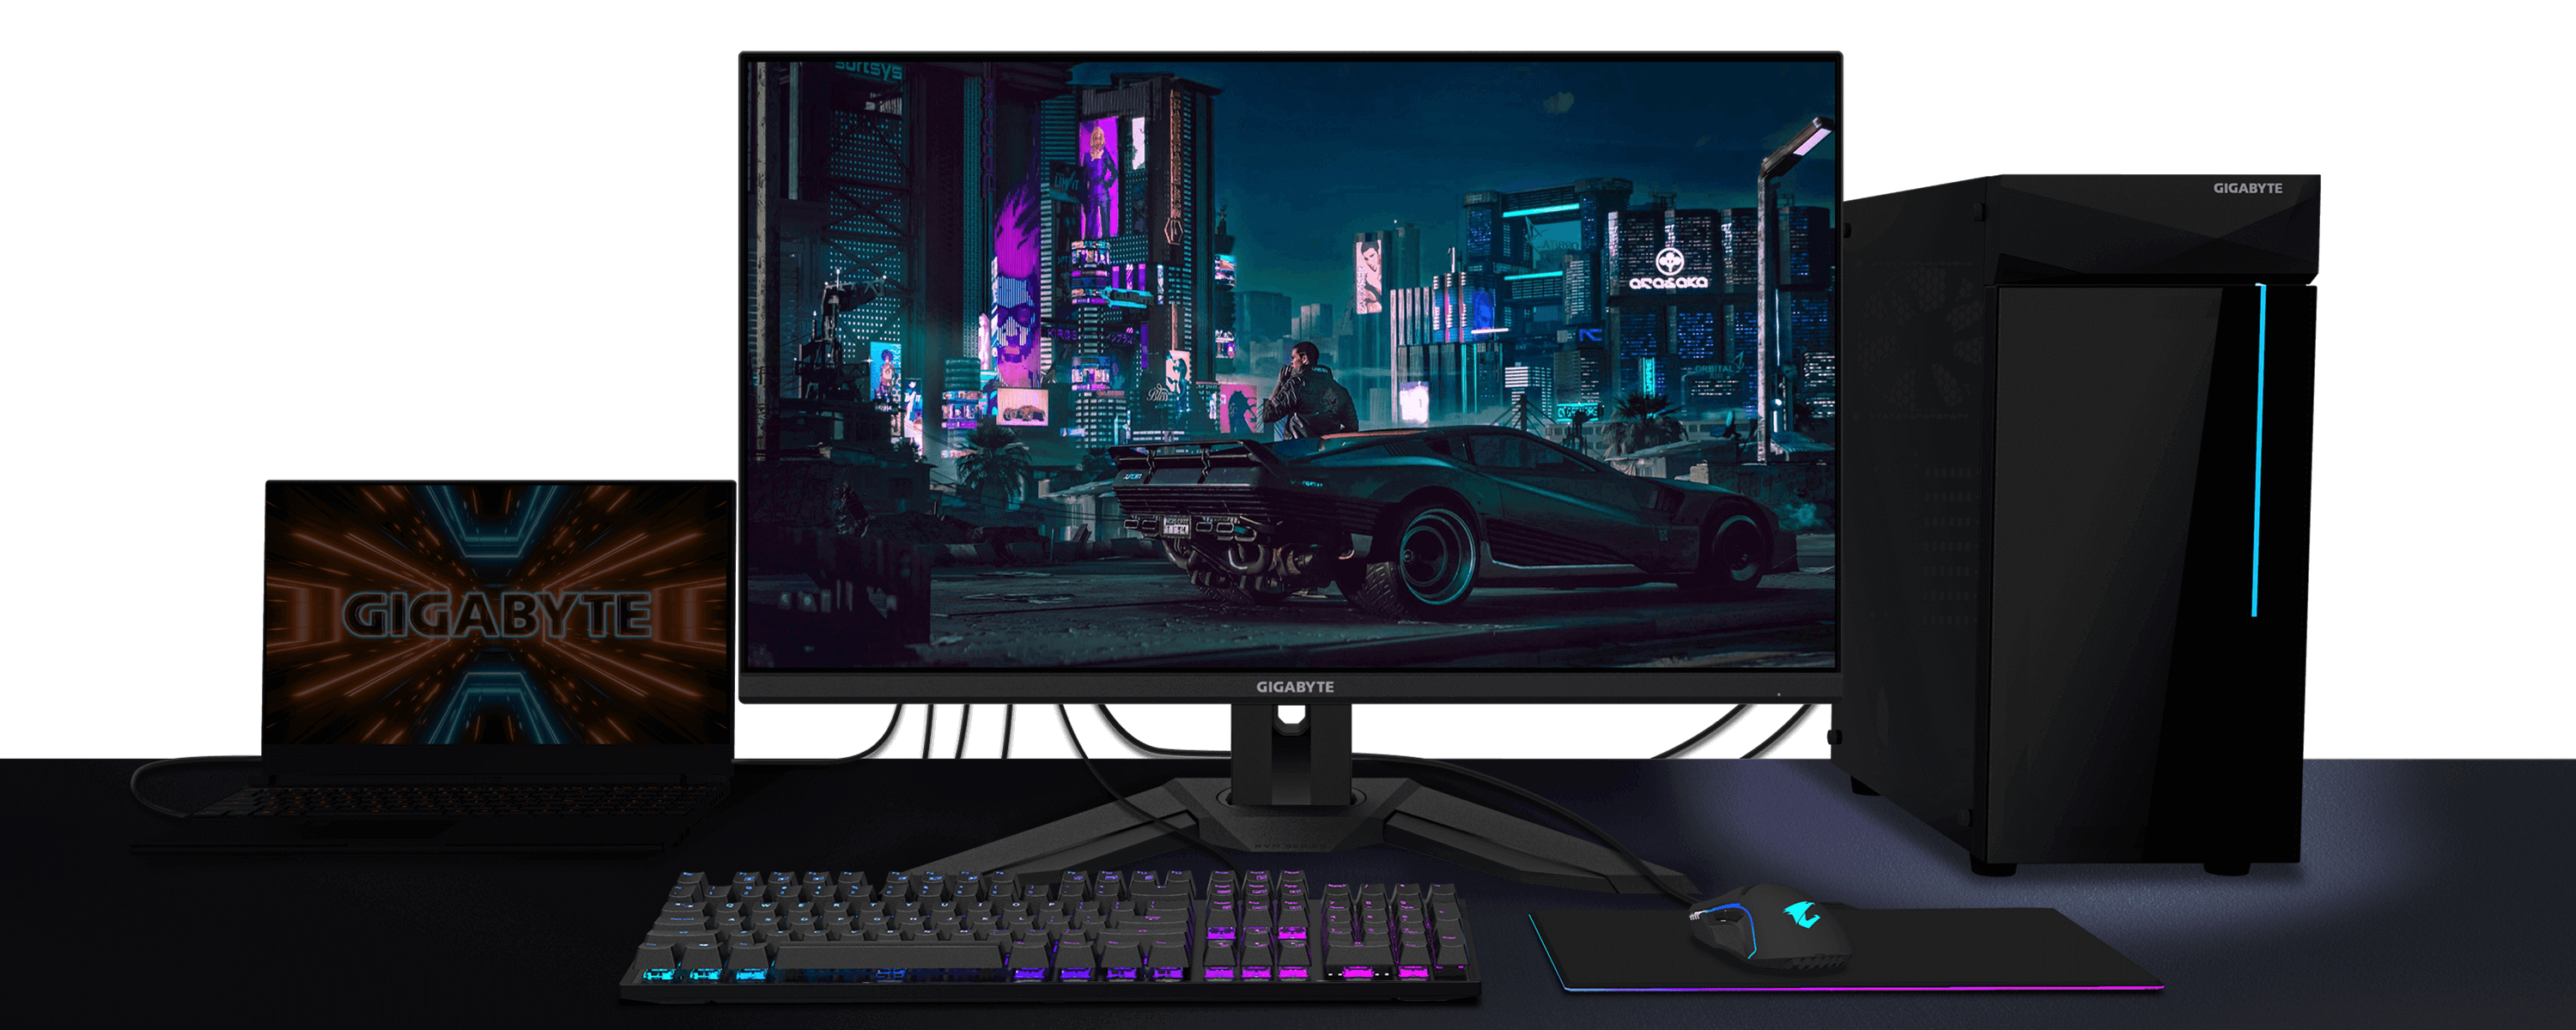 GIGABYTE M32U Gaming Monitor 4K | Gaming PC Built